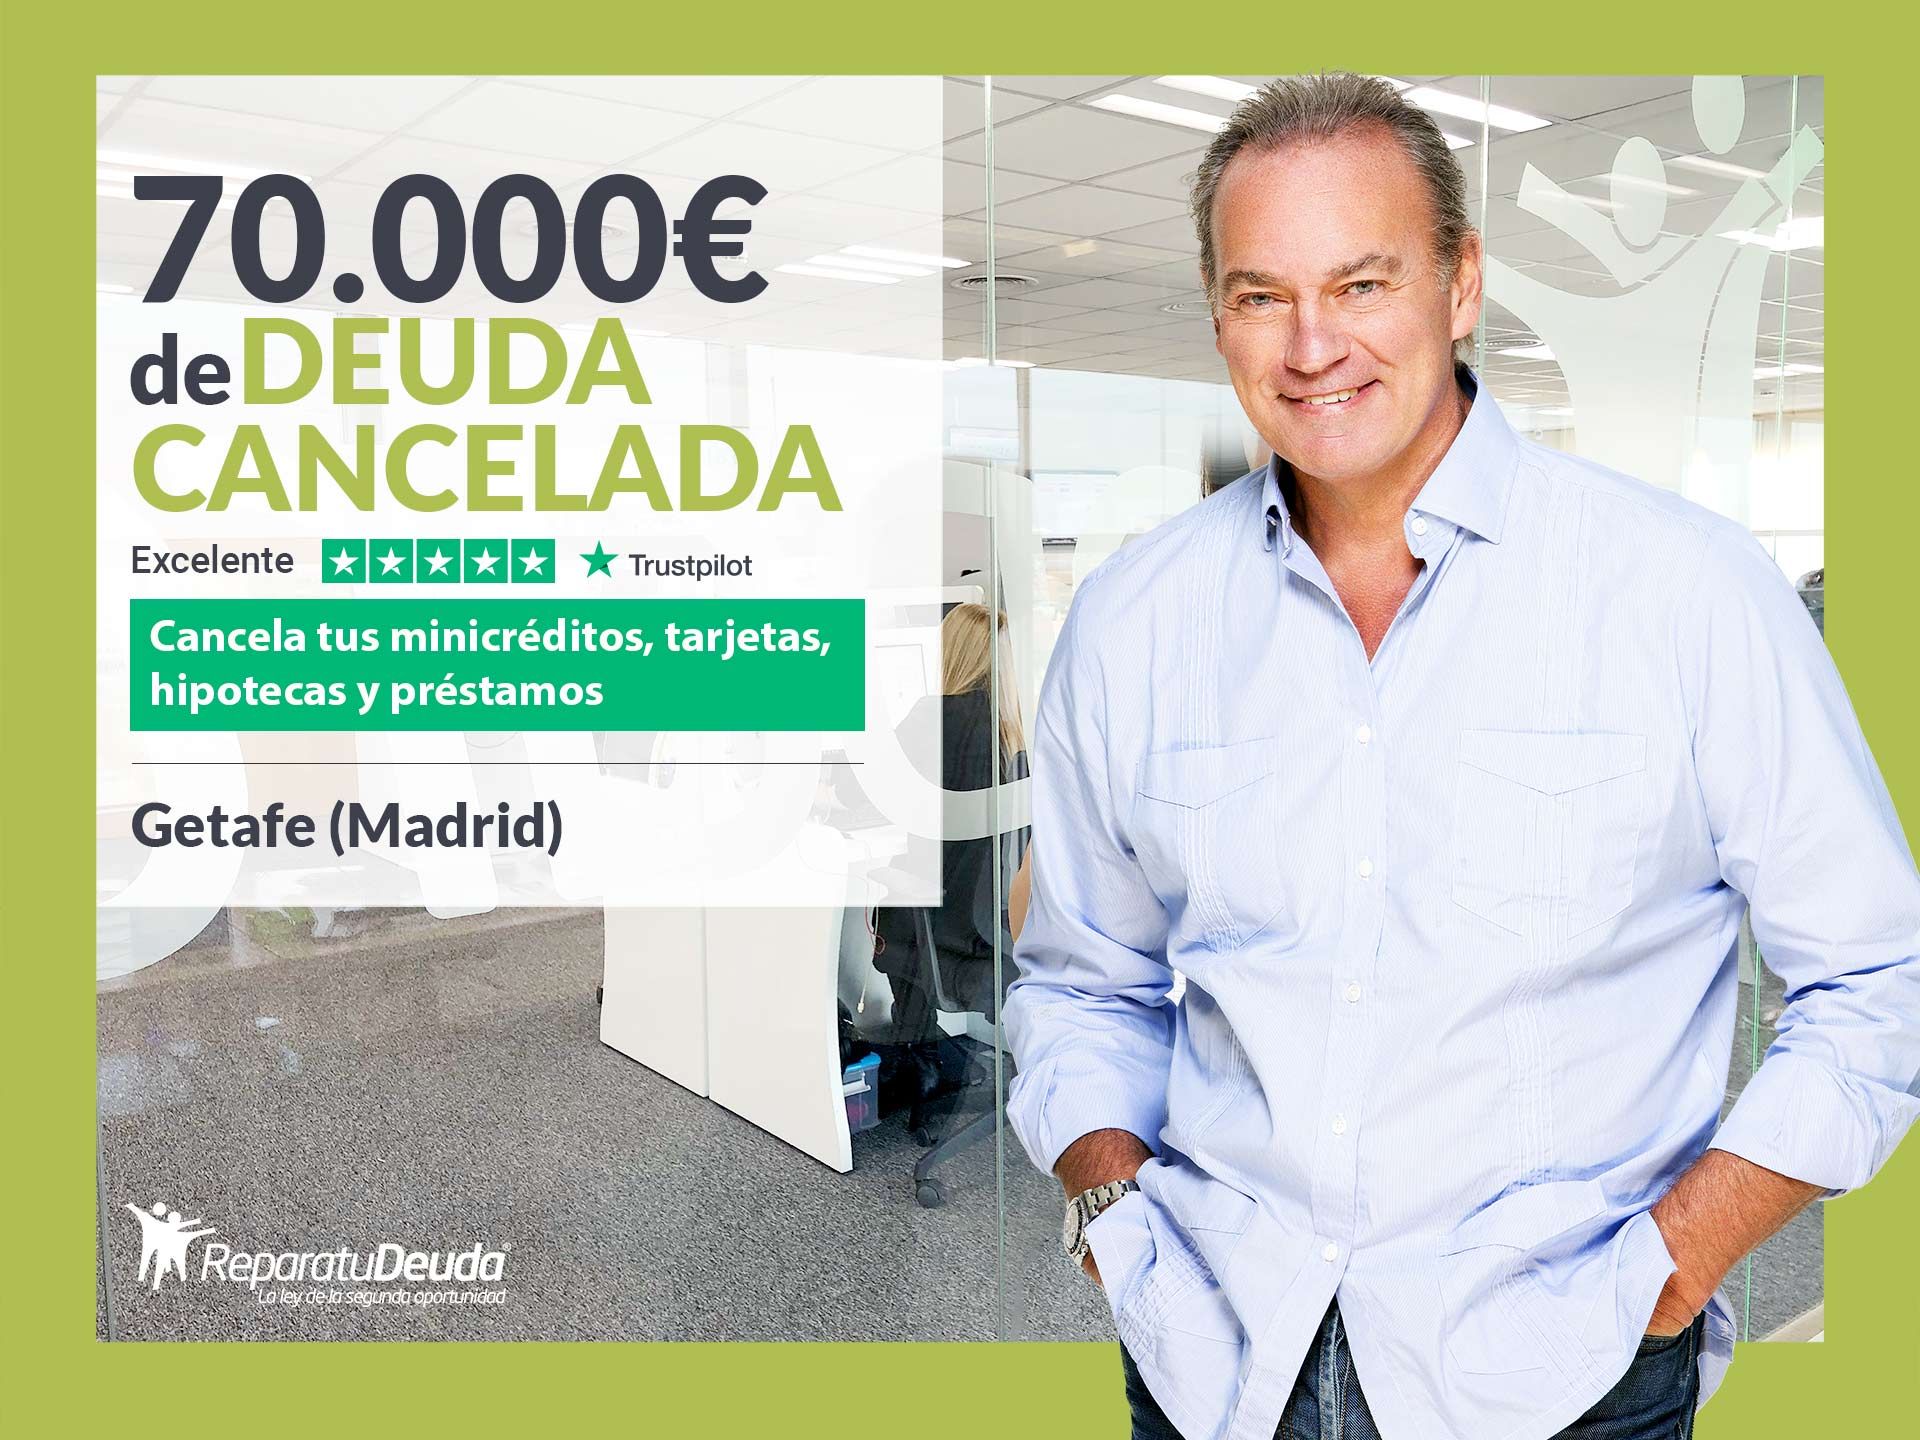 Repara tu Deuda Abogados cancela 70.000? en Getafe (Madrid) con la Ley de Segunda Oportunidad